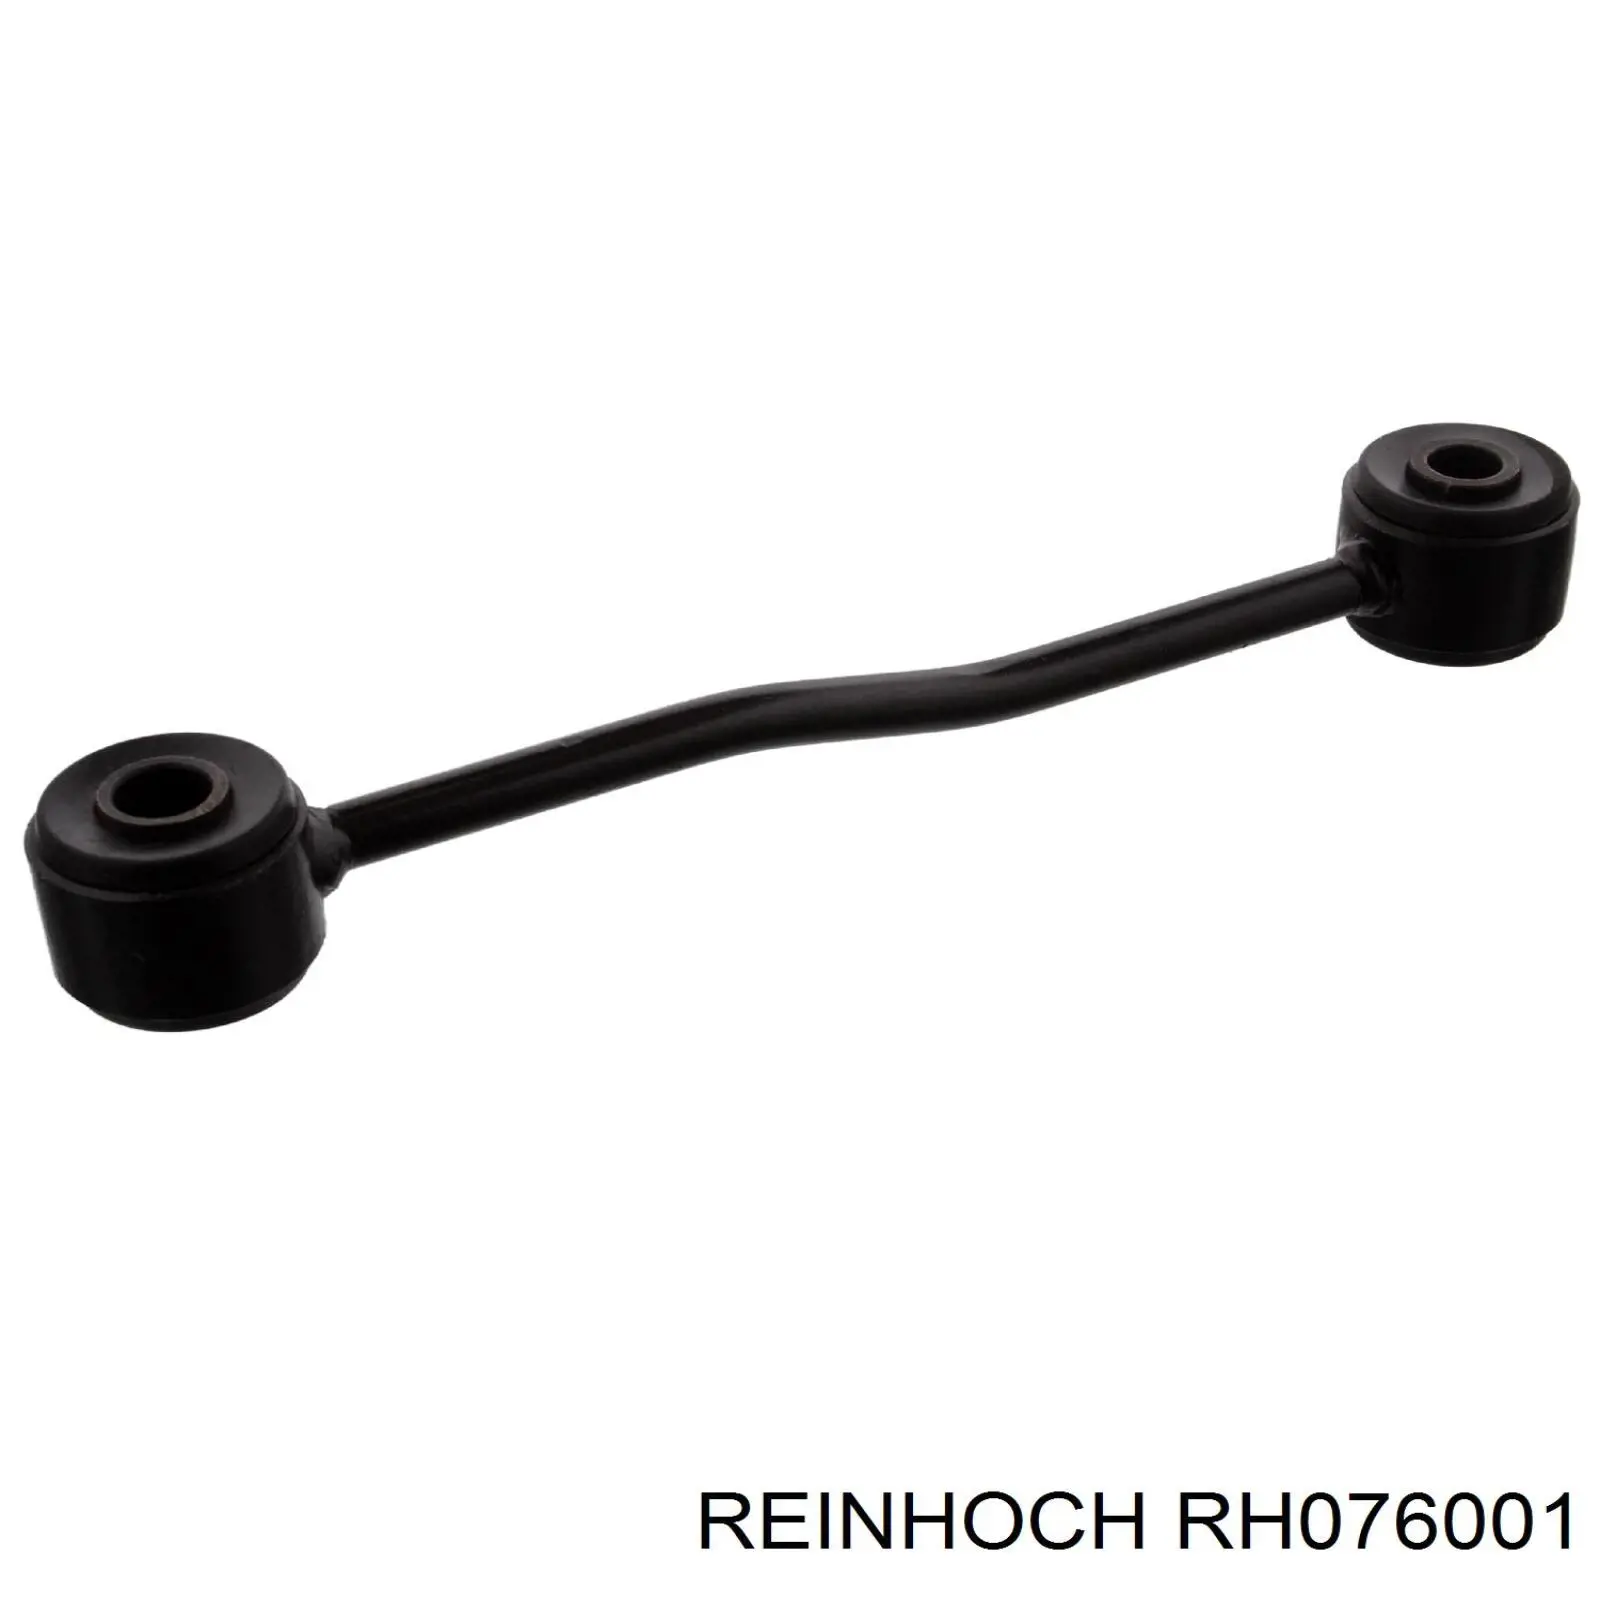 RH076001 Reinhoch стойка стабилизатора заднего